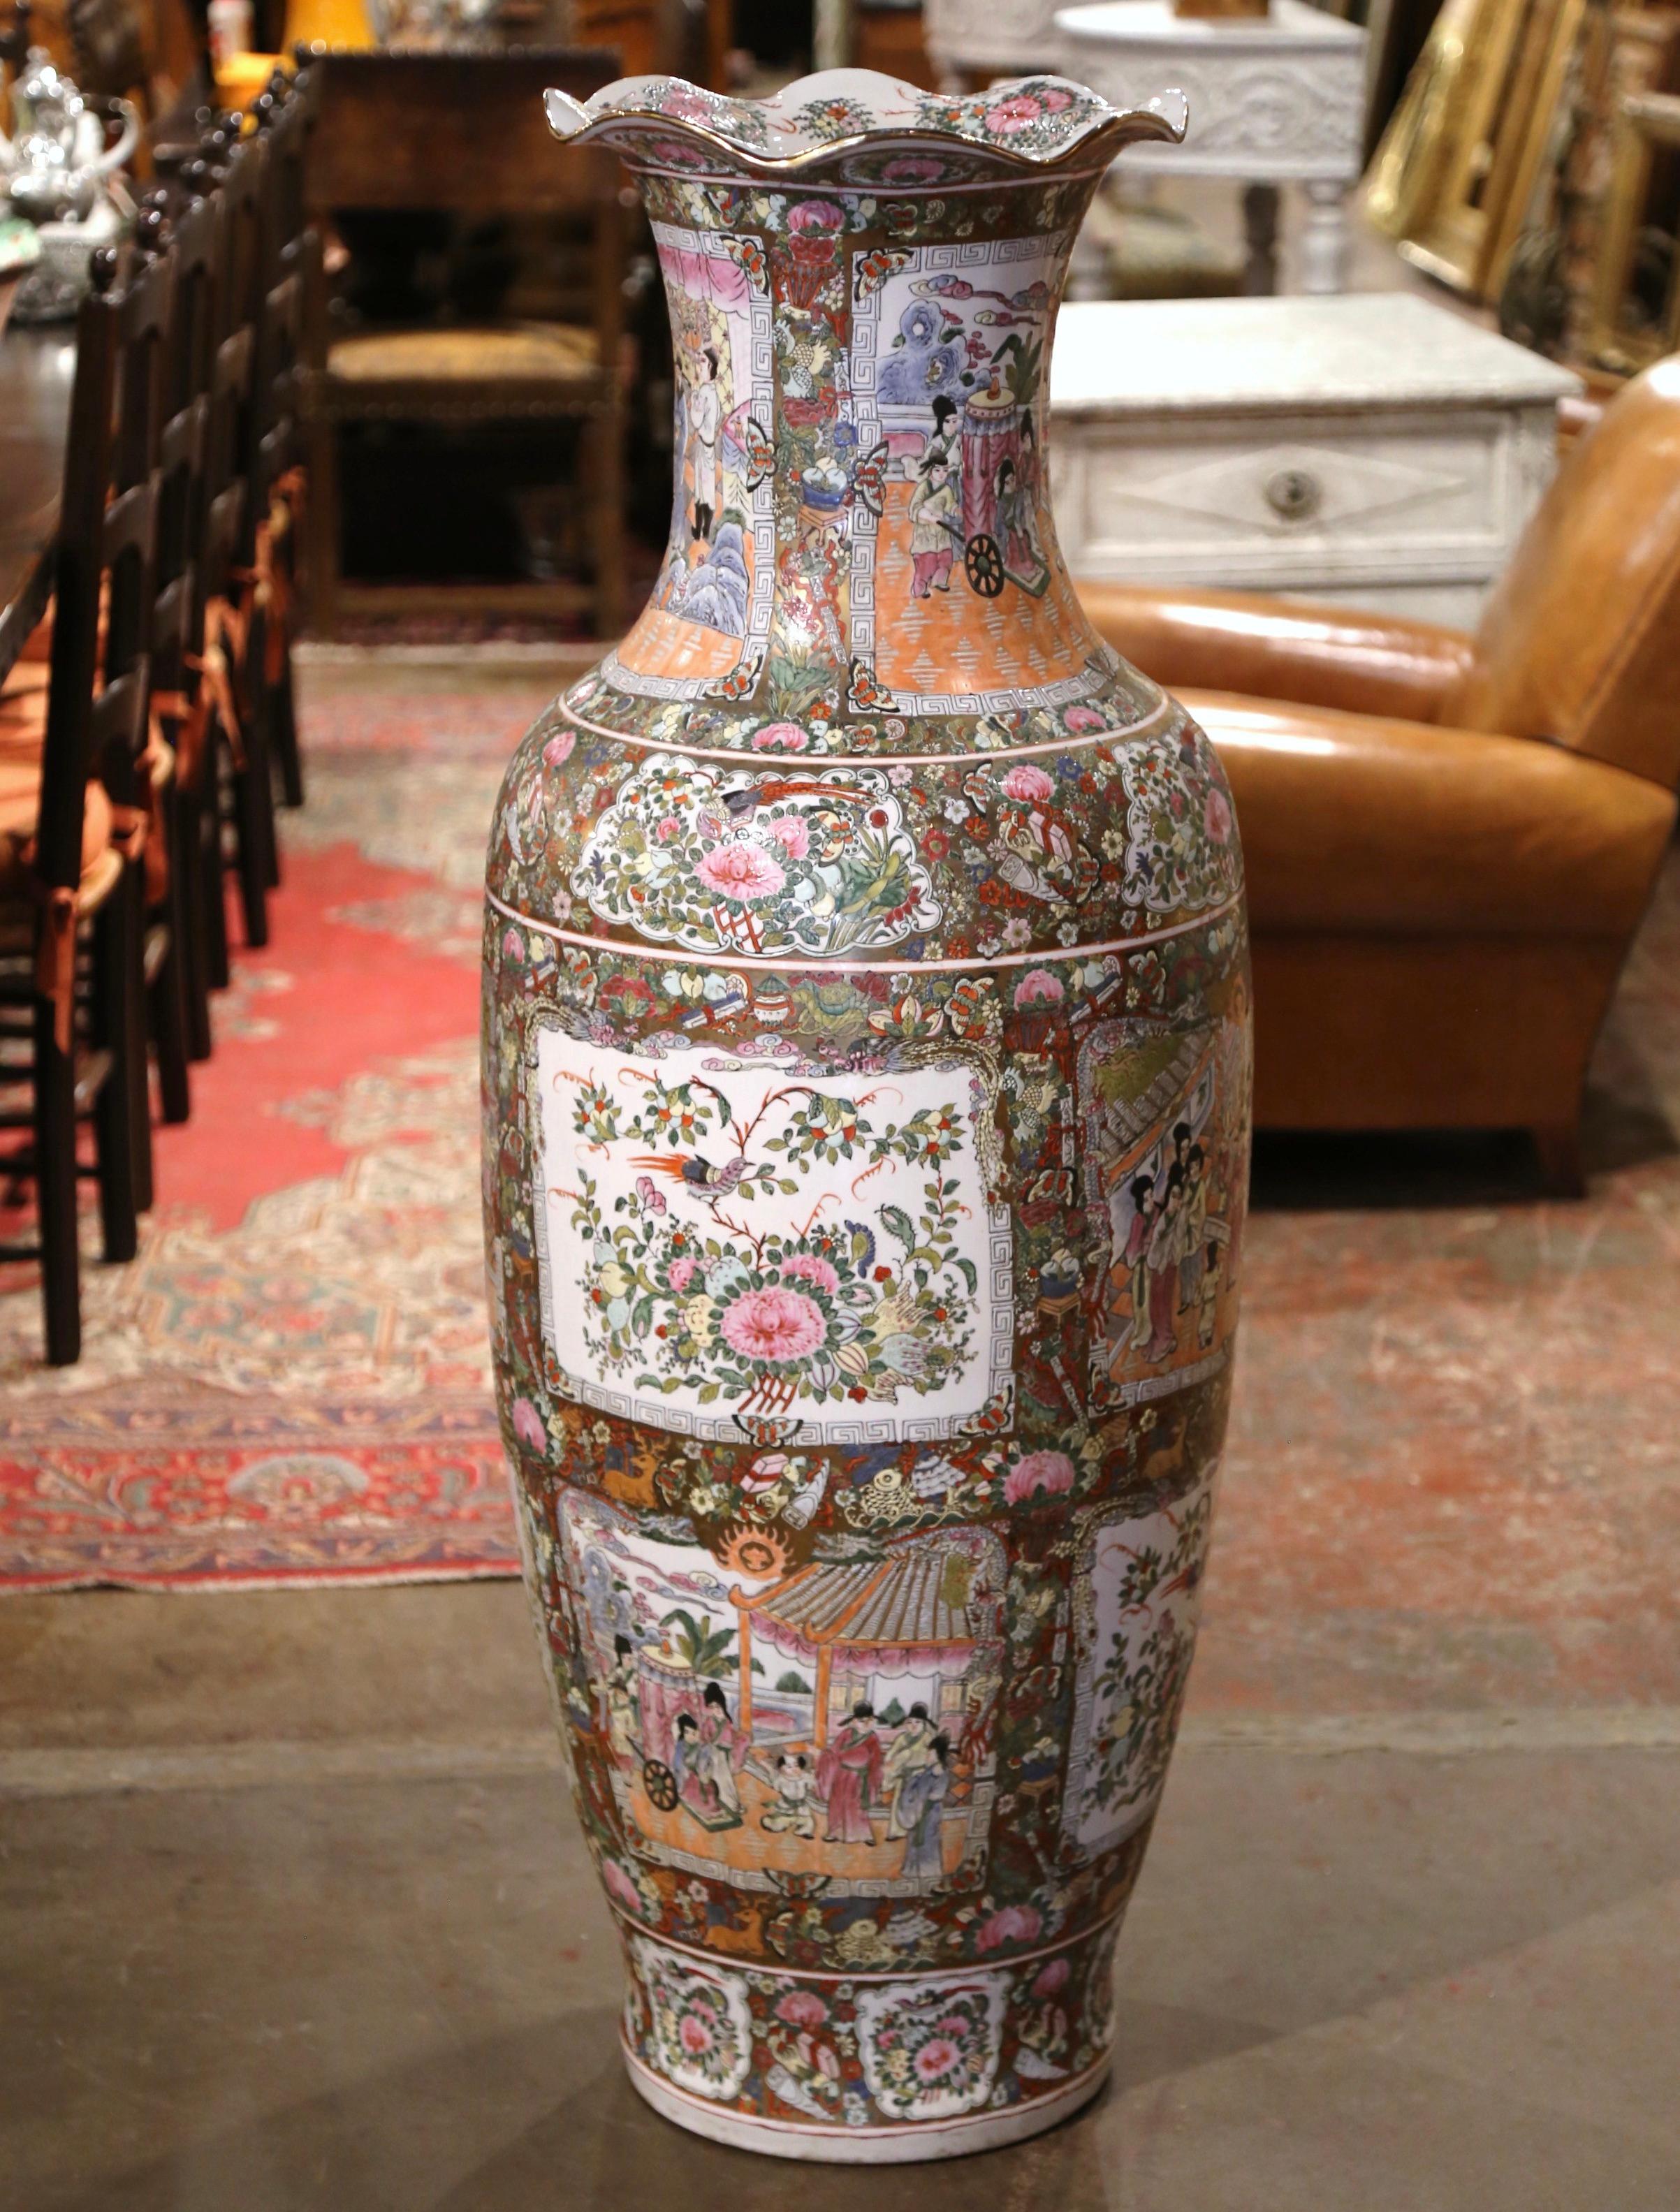 Décorez une entrée ou un coin de pièce avec cette importante jarre antique colorée. Fabriqué en Chine vers 1950, l'important vase Family Rose est de forme ronde et décoré d'un bord festonné au sommet. Le grand vase est orné de motifs chinois peints